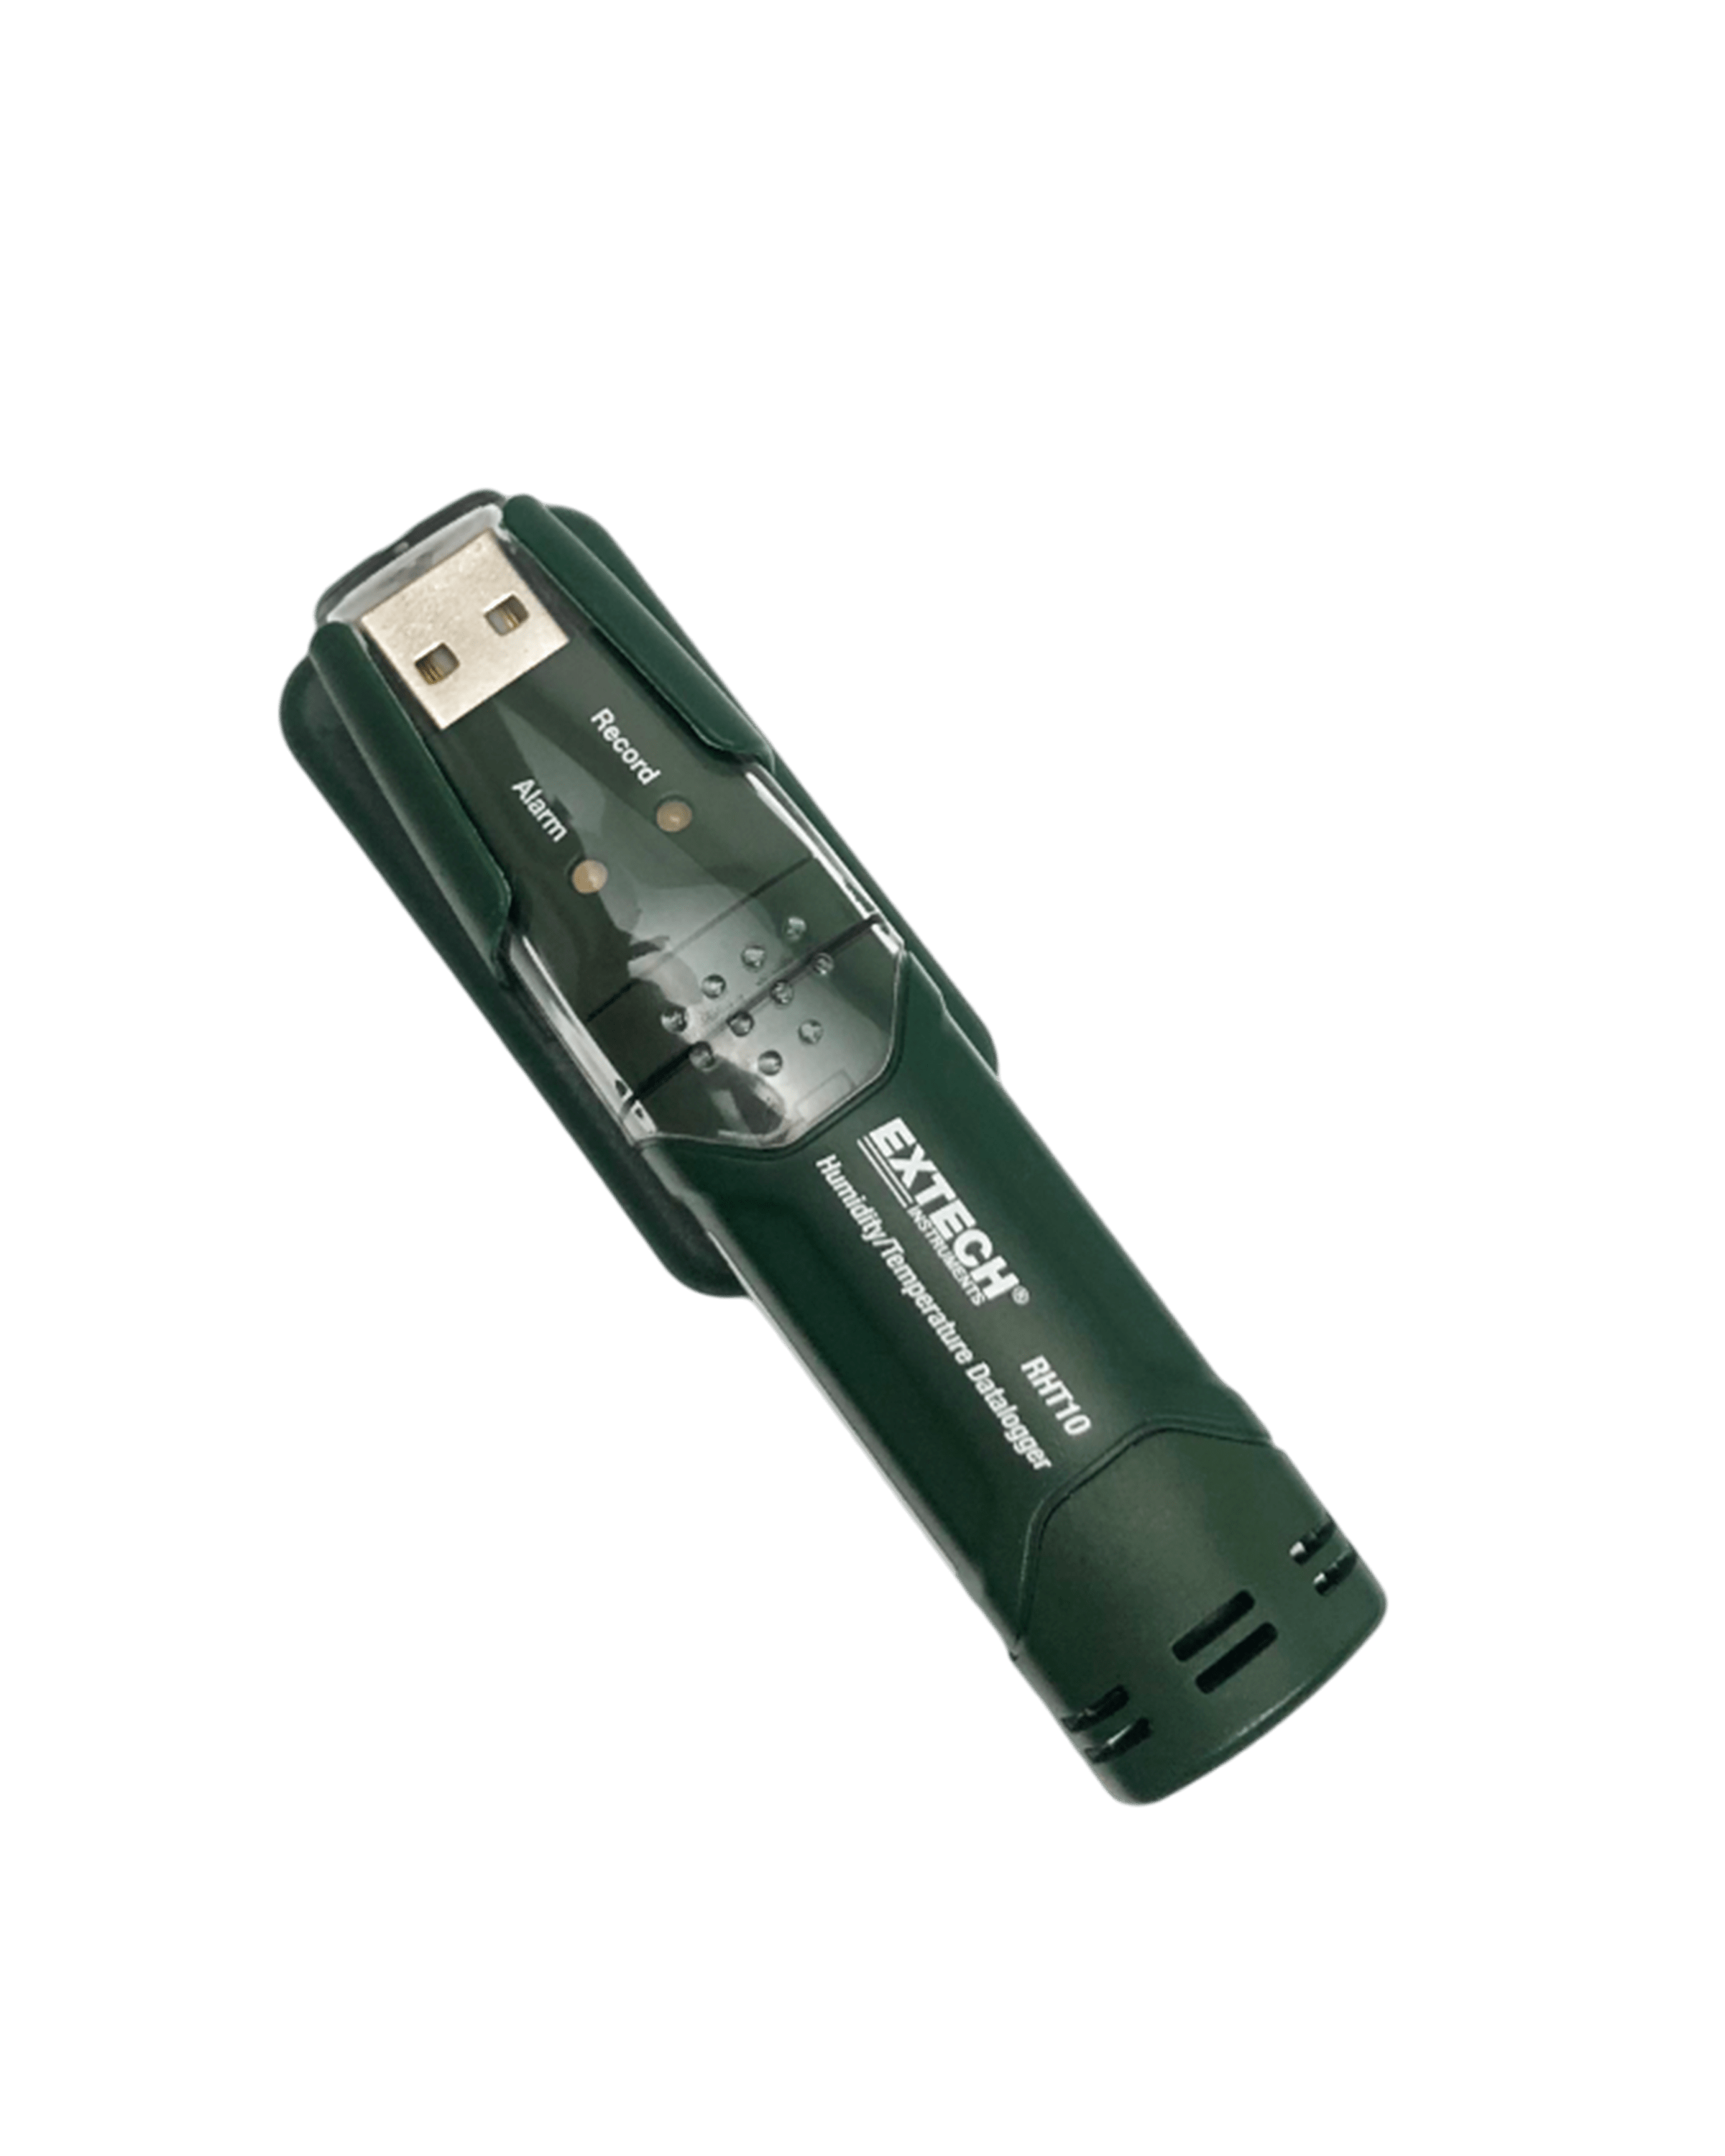 DATA LOGGER (REGISTRADOR DE DADOS) USB DE UMIDADE/TEMPERATURA - EXTECH - RHT-10